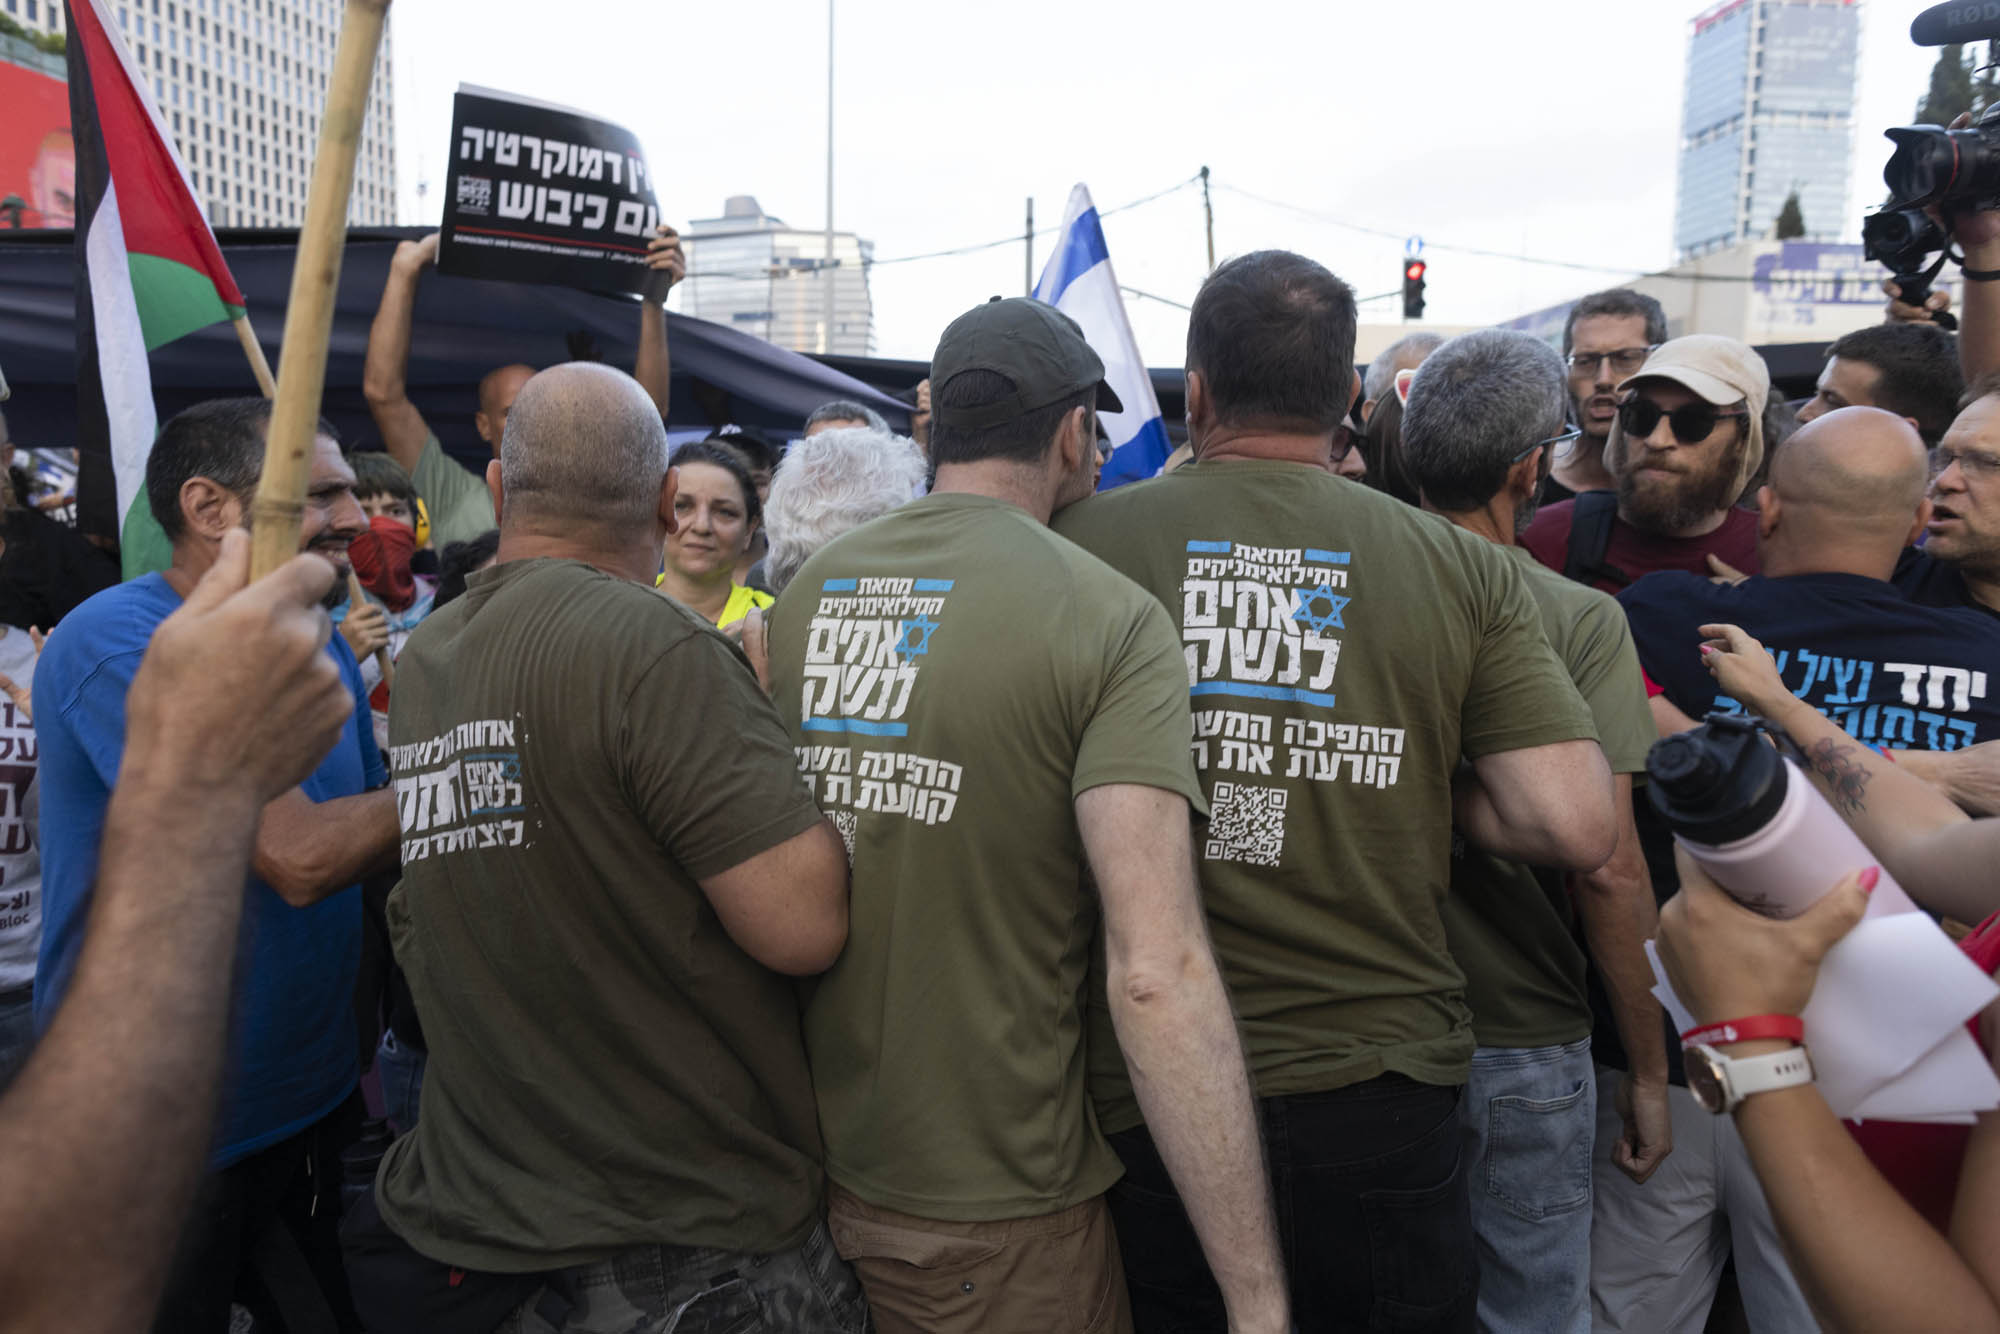 נכנסו להם לטריטוריה. פעילים של "אחים לנשק" תוקפים צעדה של הגוש נגד הכיבוש בקפלן, 1 ביולי 2023 (צילום: אורן זיו)